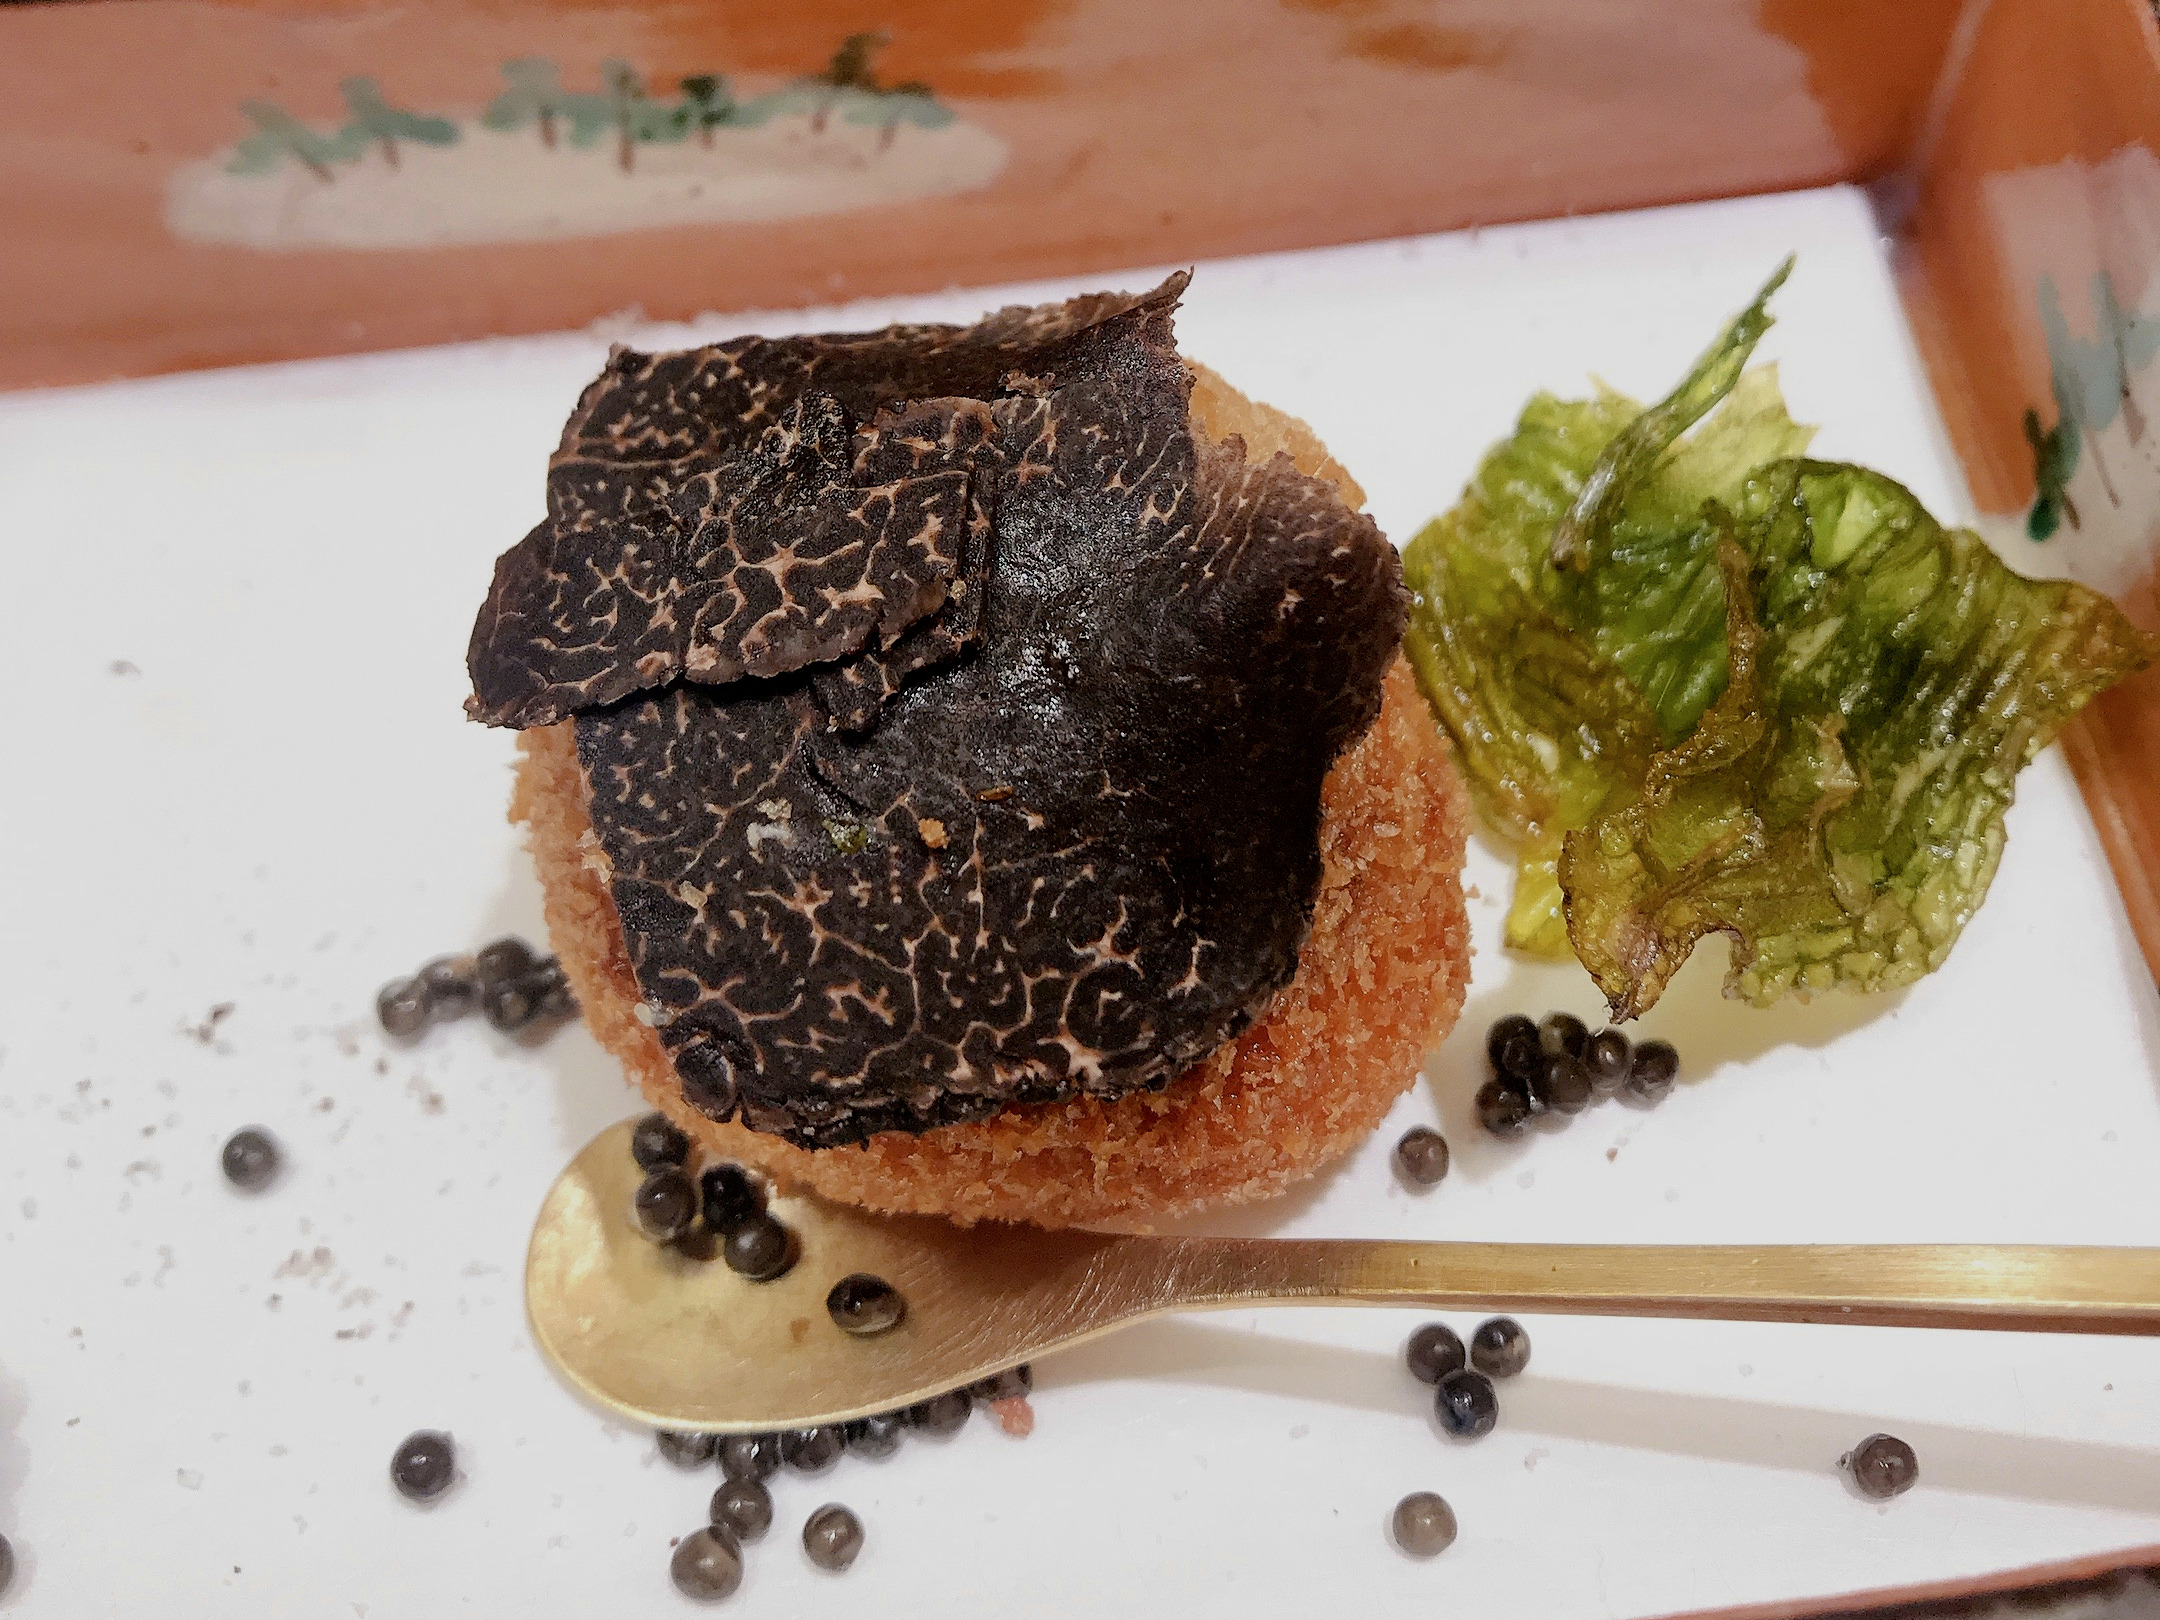 Truffle dish at Yokoyama in Kanazawa, Japan